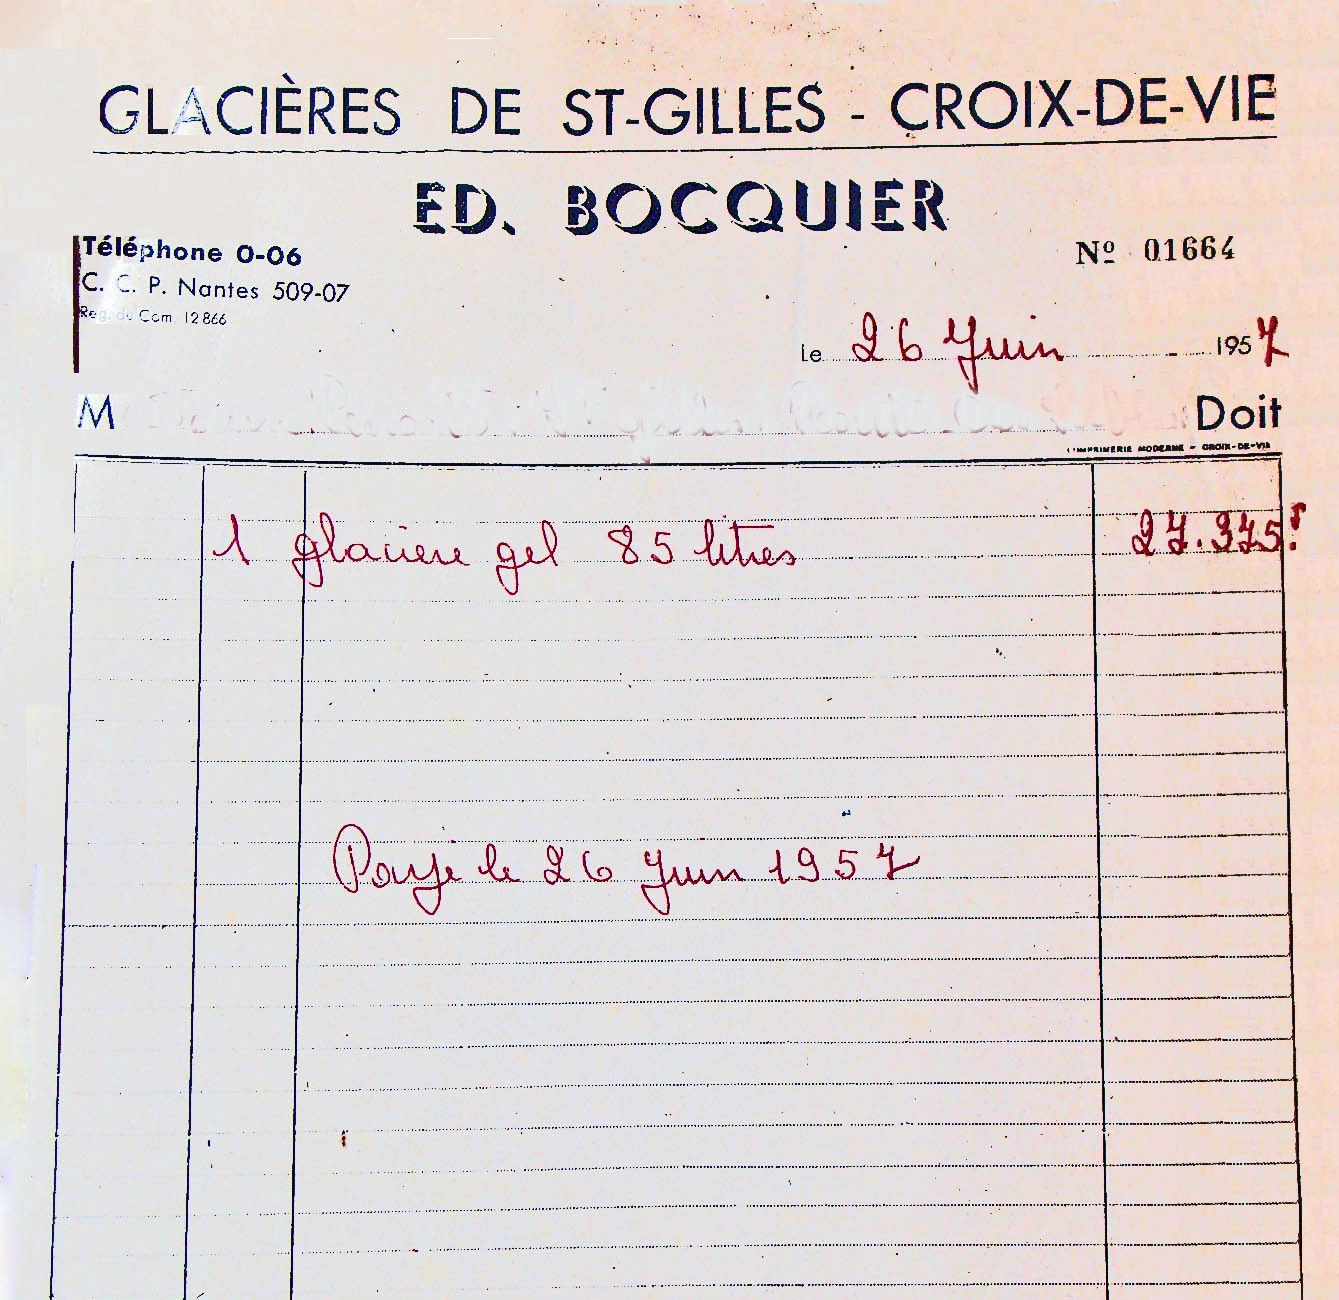 Glacières Ed. Bocquier